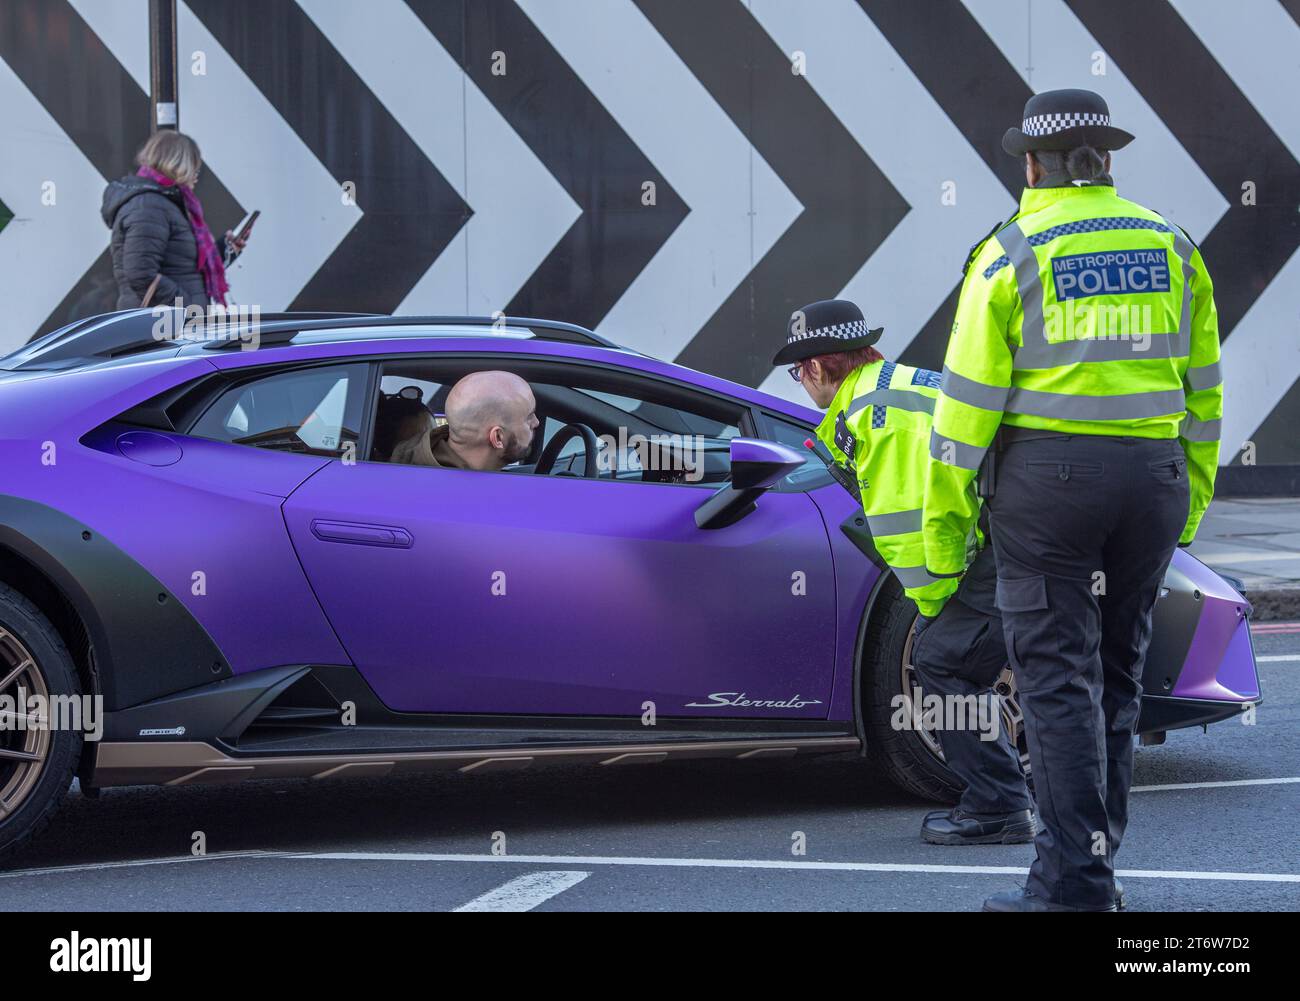 Metropolitan police Officers vérifie les documents d'un super chauffeur de voiture, Londres, Royaume-Uni. Banque D'Images